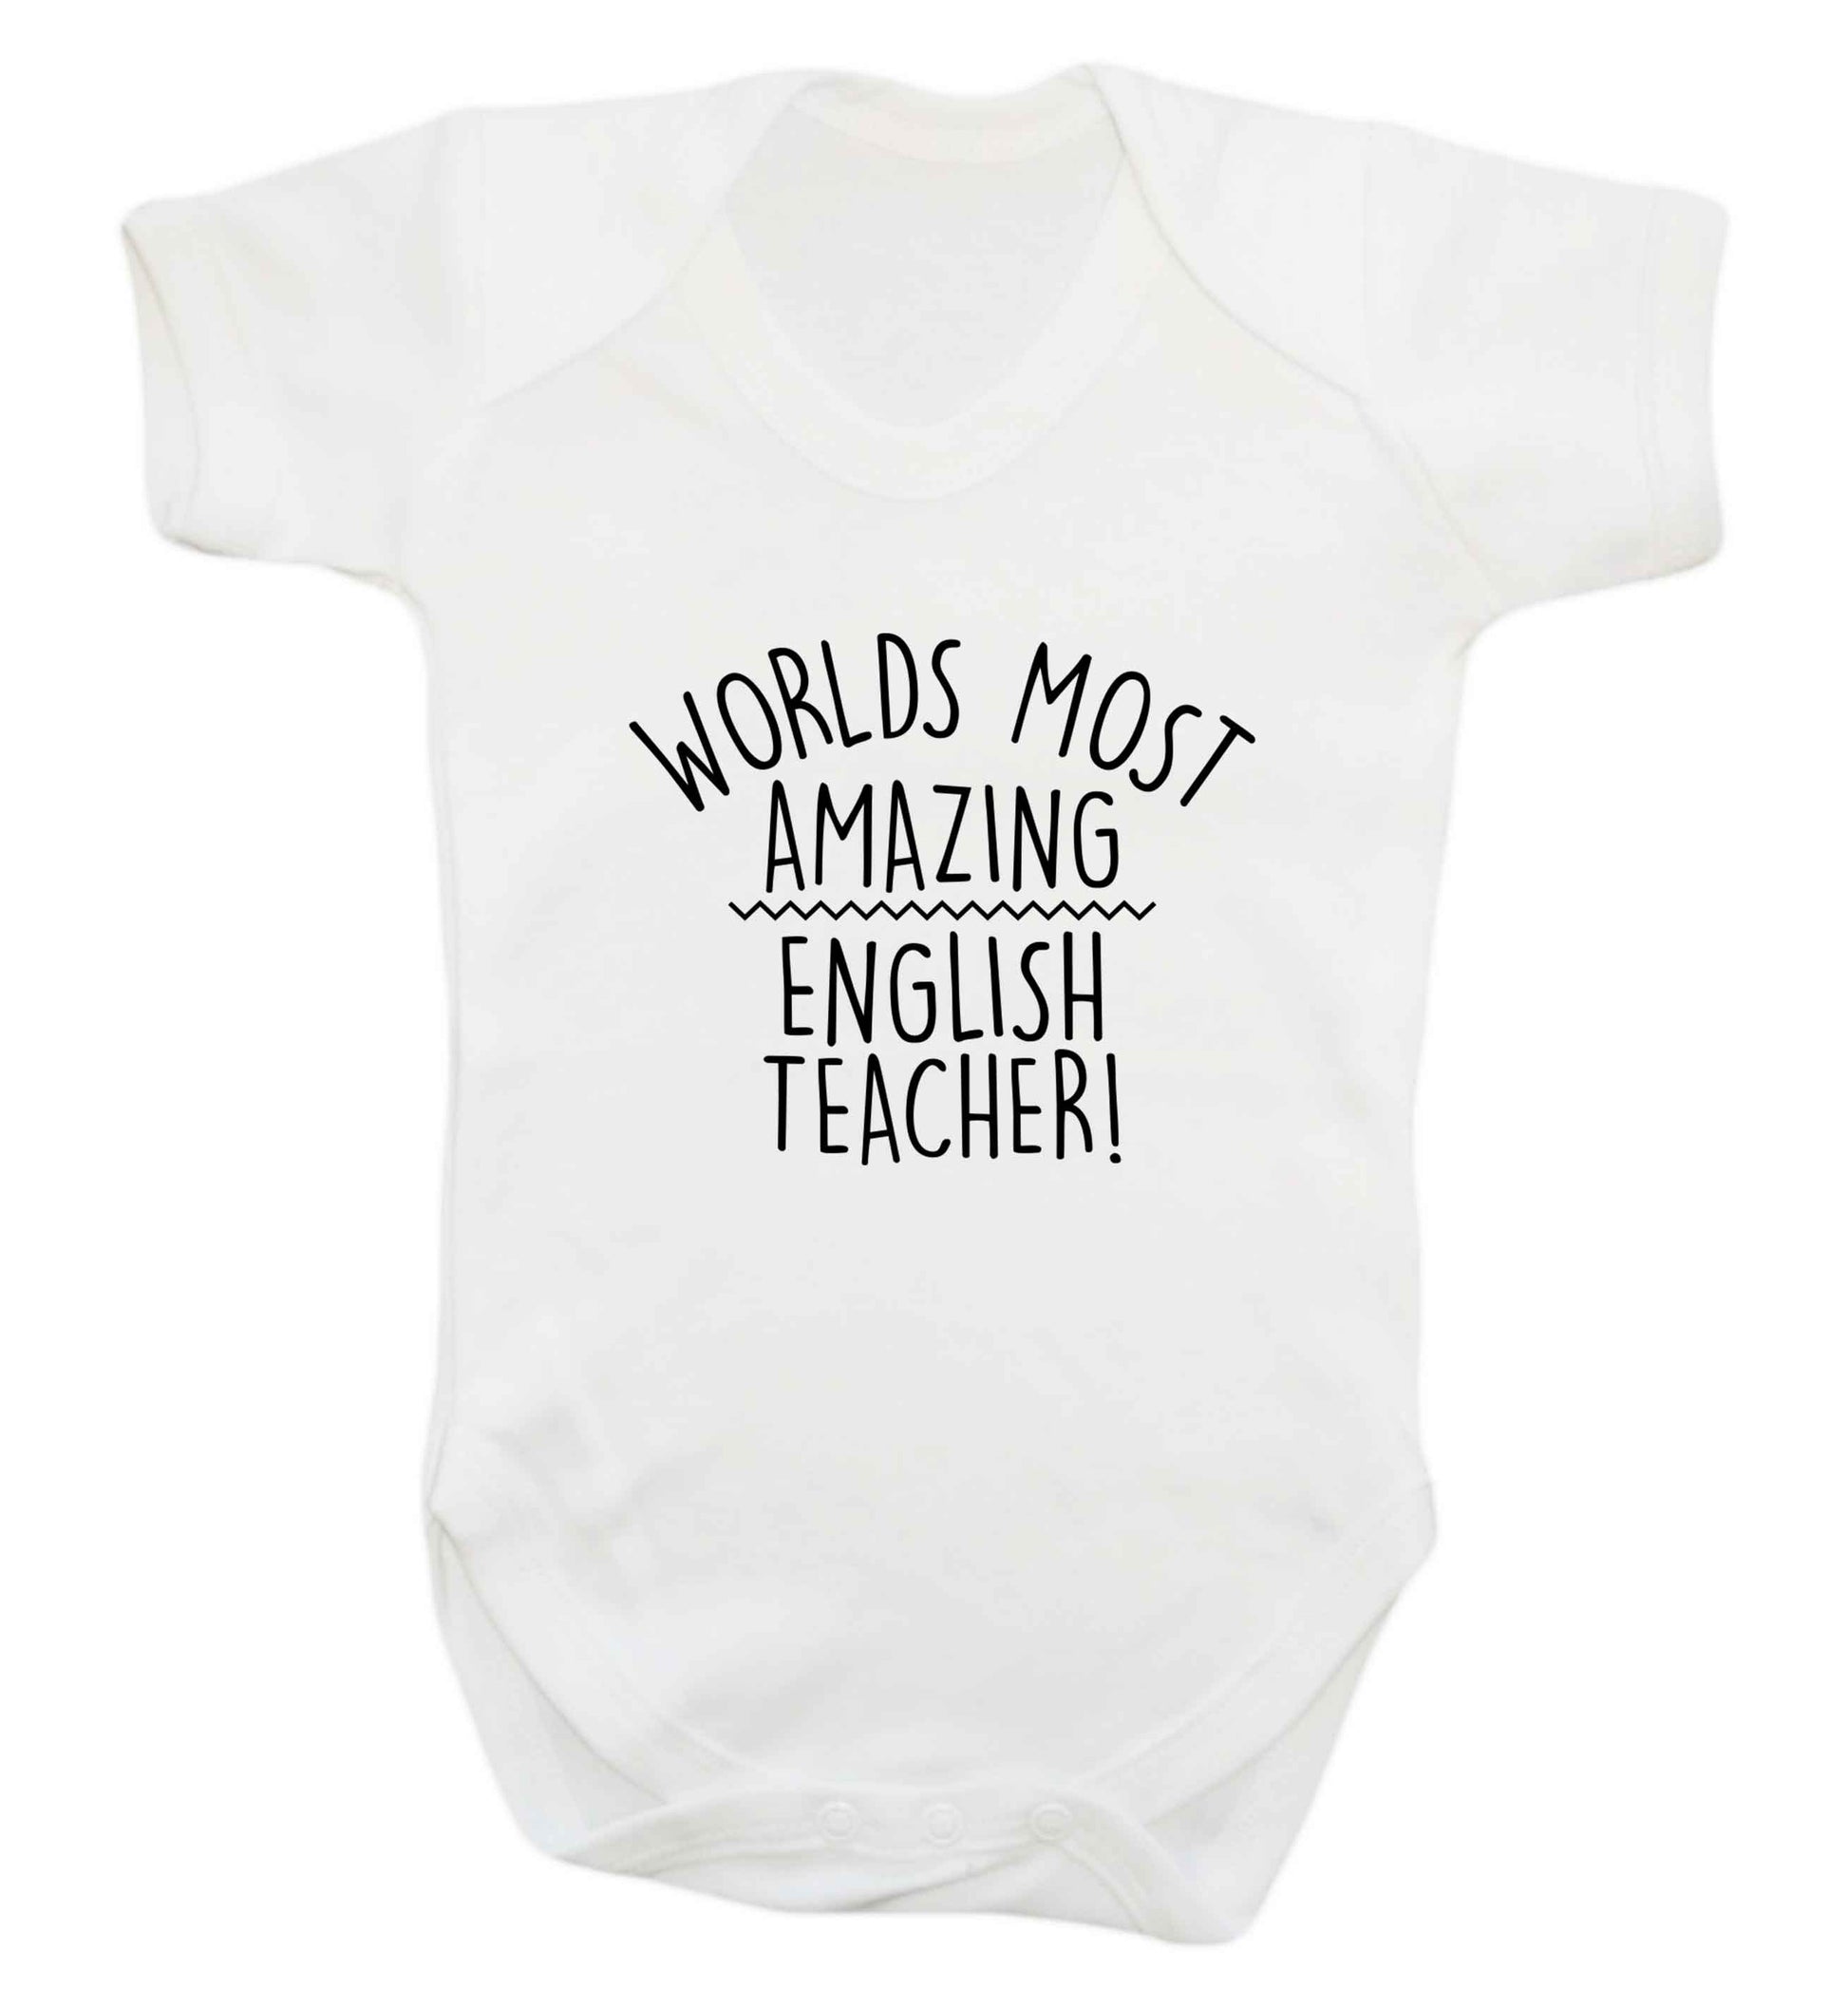 Worlds most amazing English teacher baby vest white 18-24 months